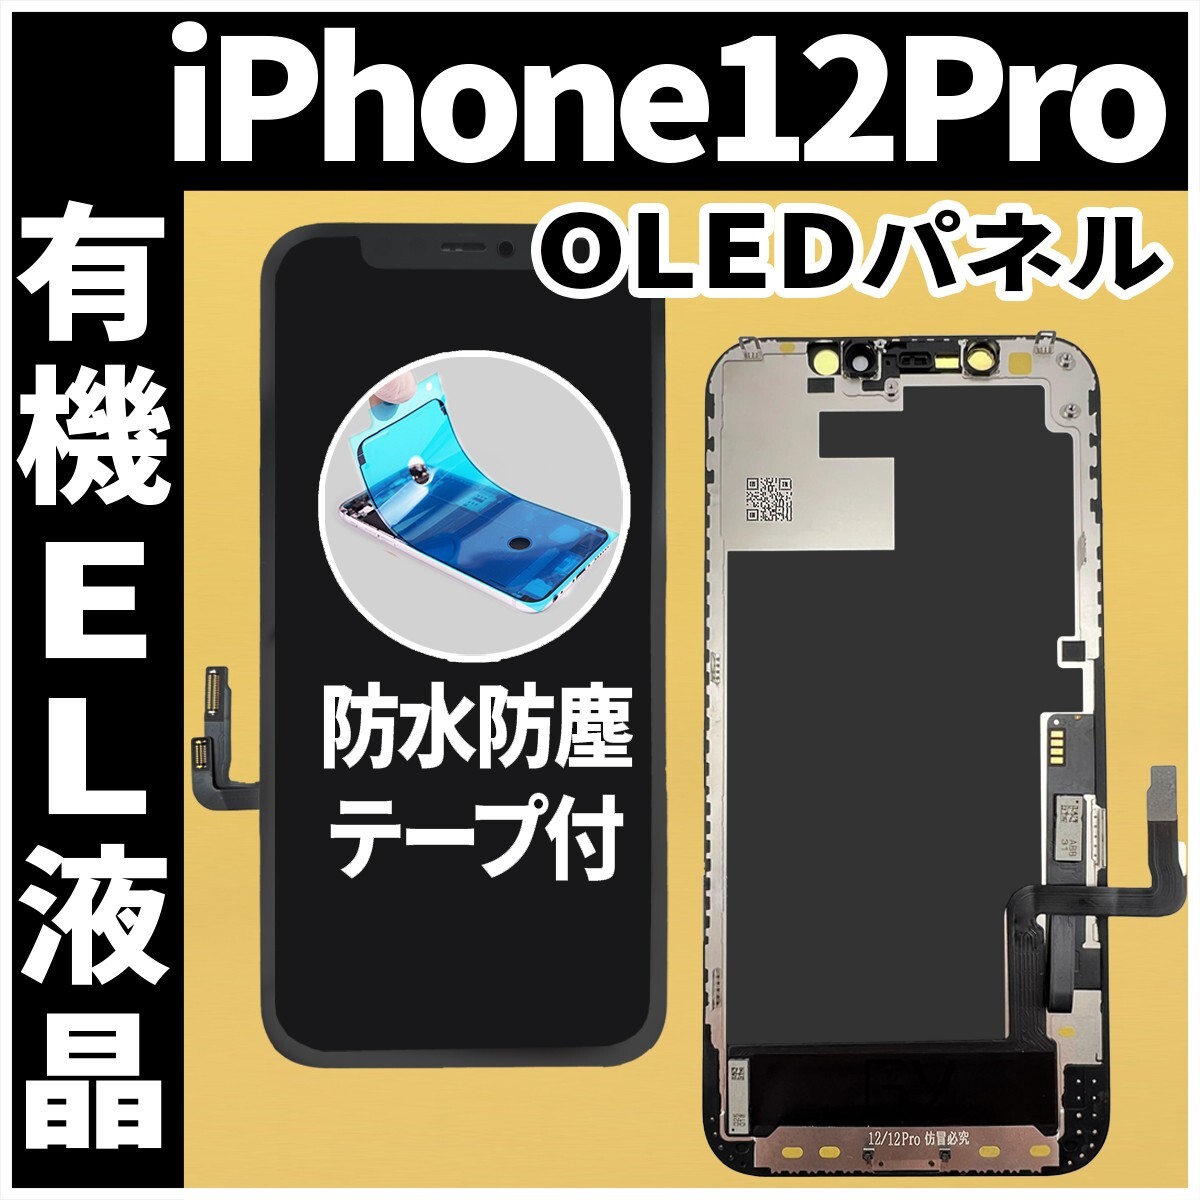 フロントパネル iPhone12Pro 有機EL液晶 OLED 防水テープ 工具無 互換 ガラス割れ 画面割れ 業者 修理 iphone ディスプレイ 純正同等.